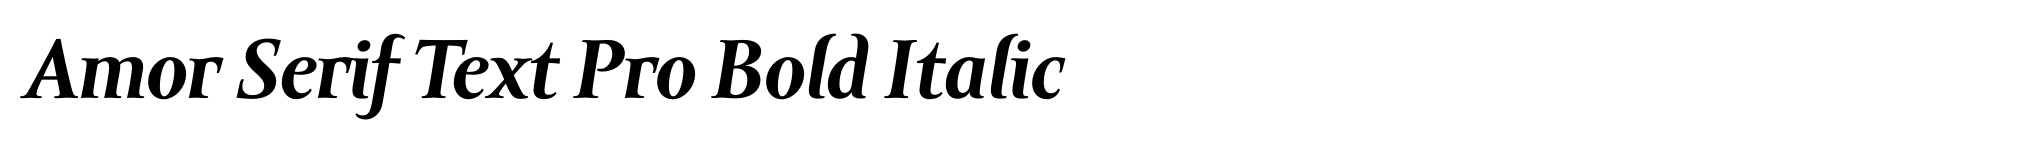 Amor Serif Text Pro Bold Italic image